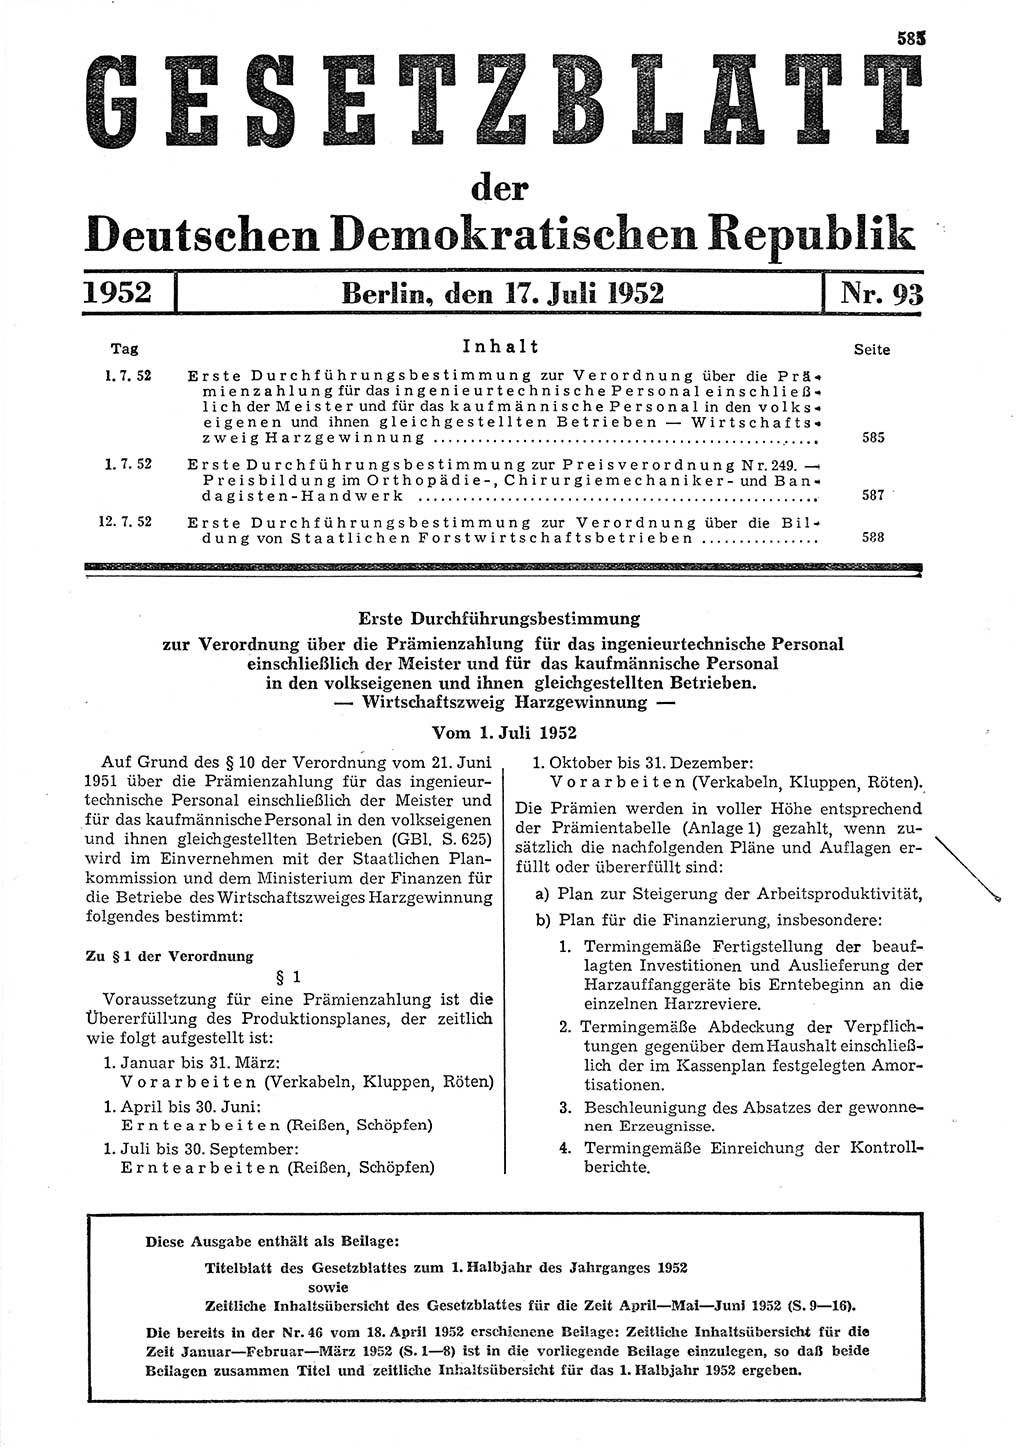 Gesetzblatt (GBl.) der Deutschen Demokratischen Republik (DDR) 1952, Seite 585 (GBl. DDR 1952, S. 585)